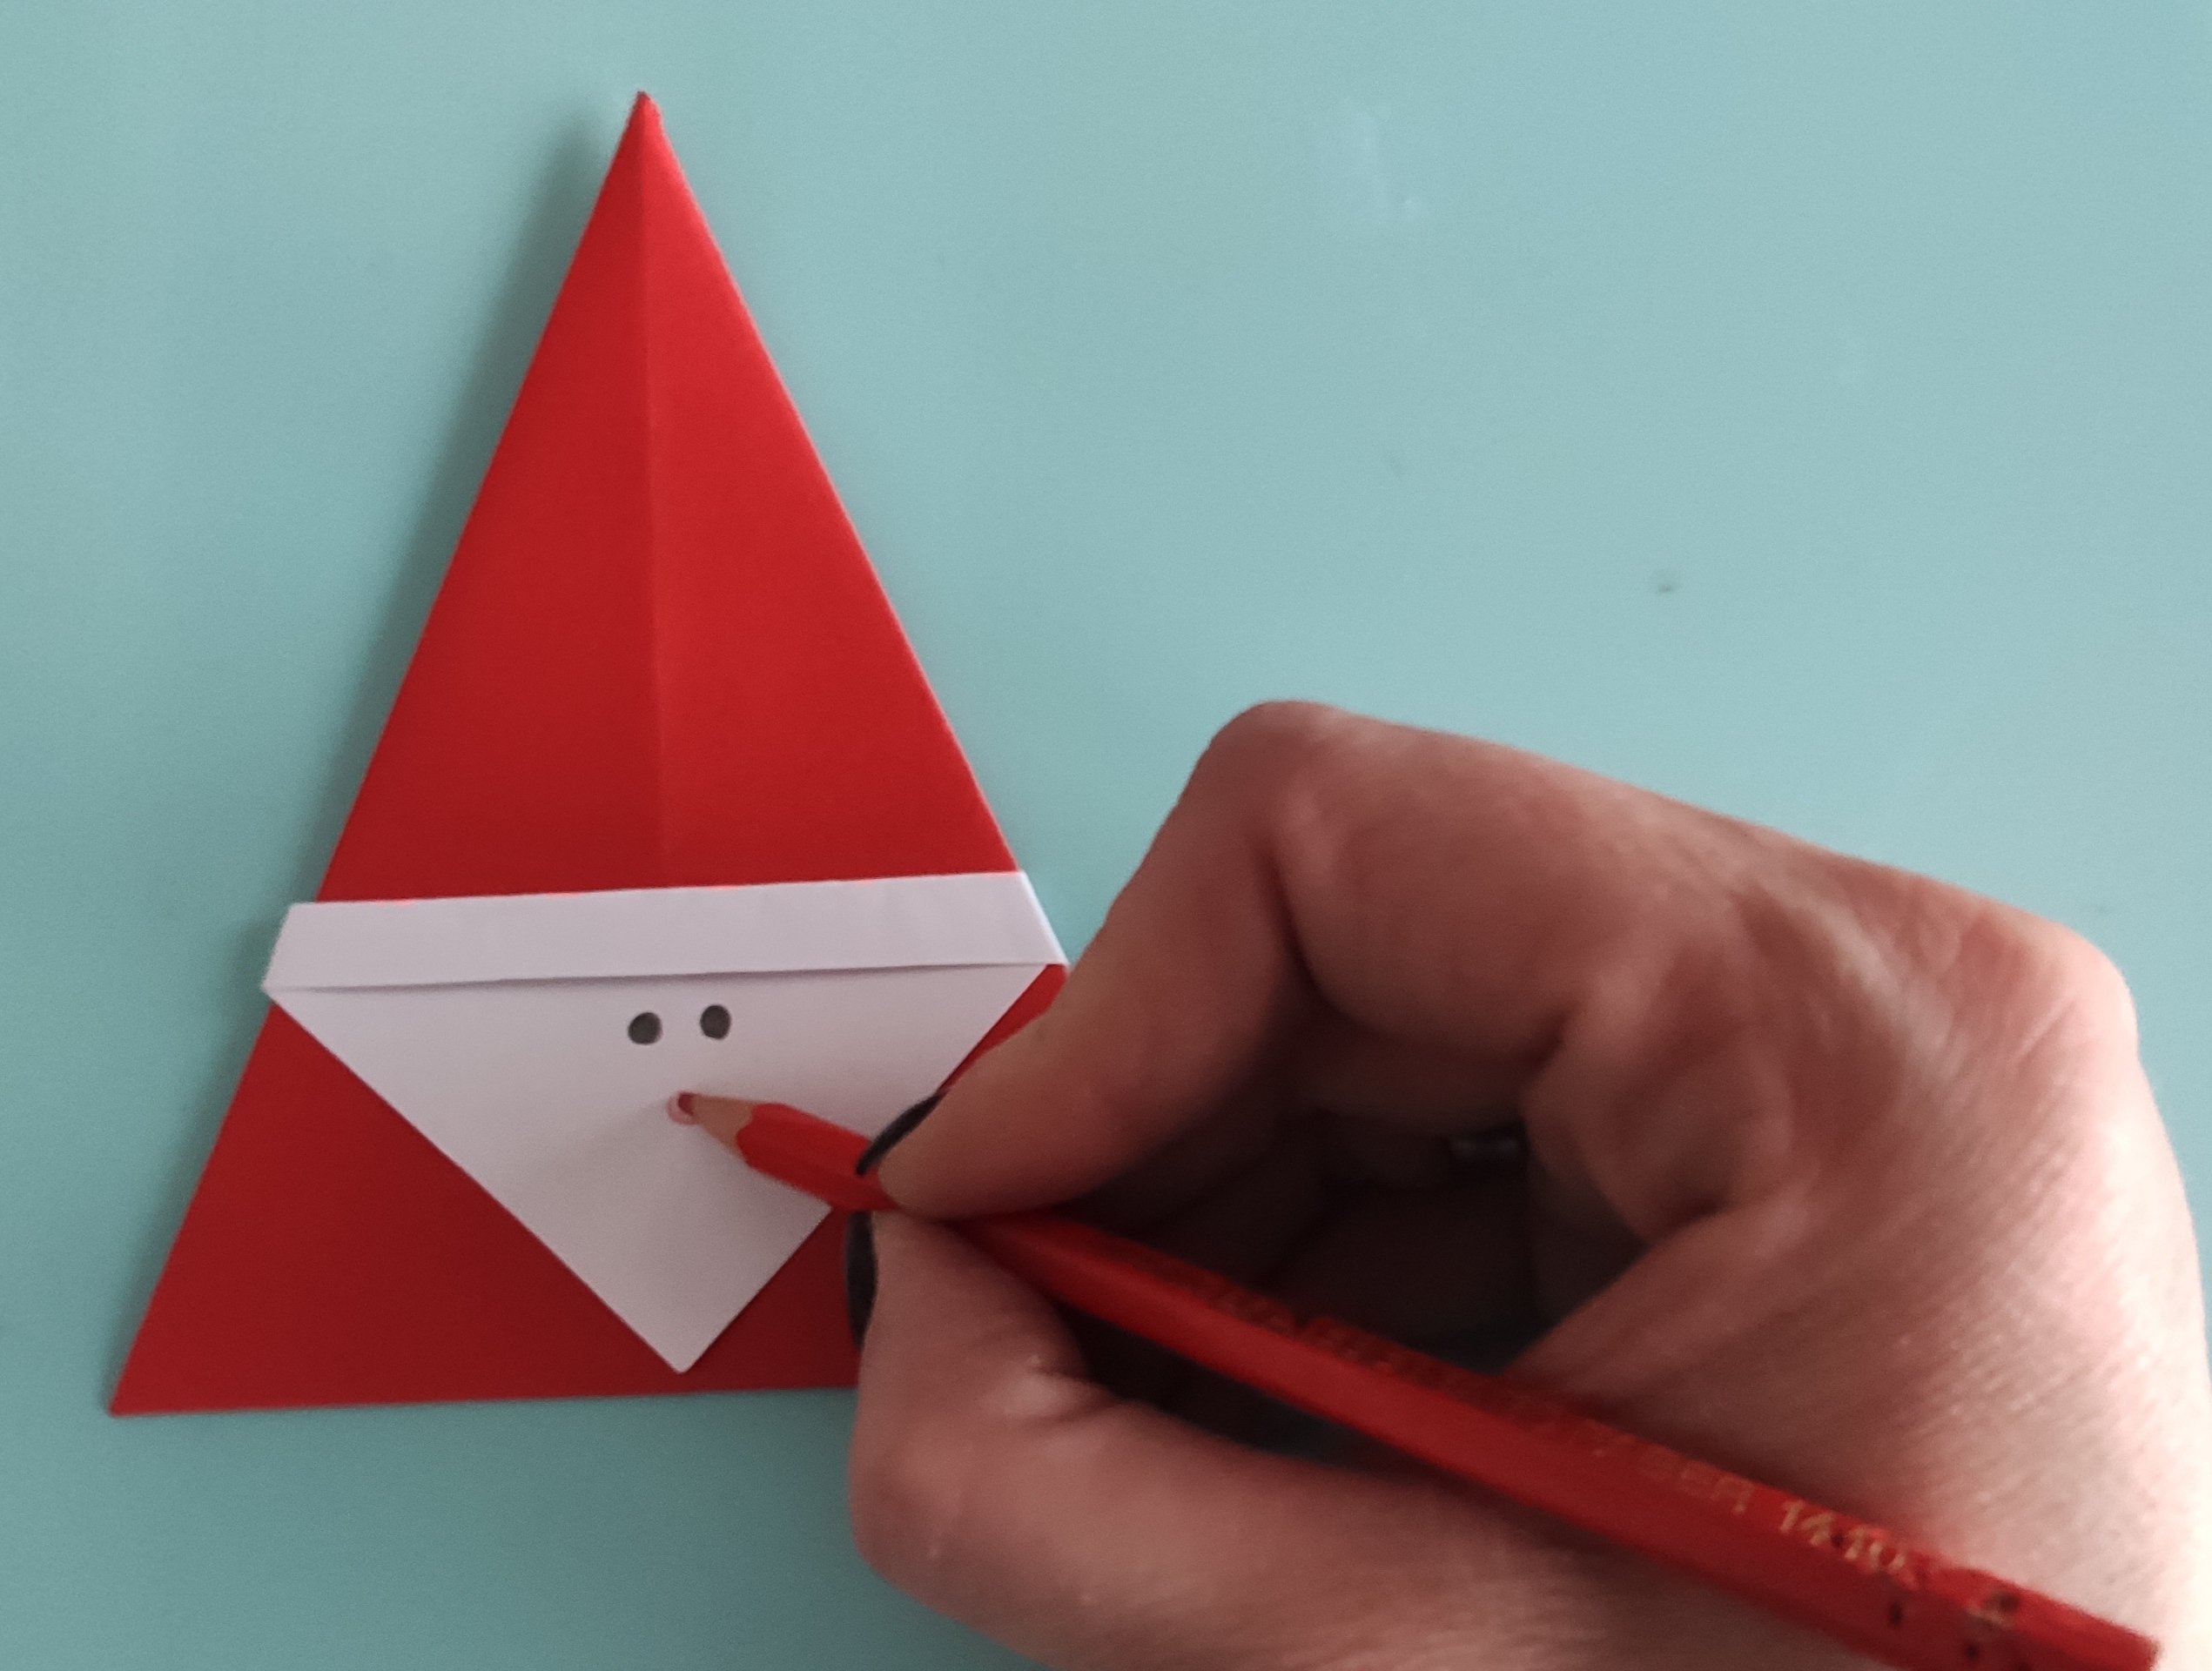 Bild zum Schritt 12 für das Bastel- und DIY-Abenteuer für Kinder: 'Mit dem roten Stift malt ihr danach eine Nase. ...'